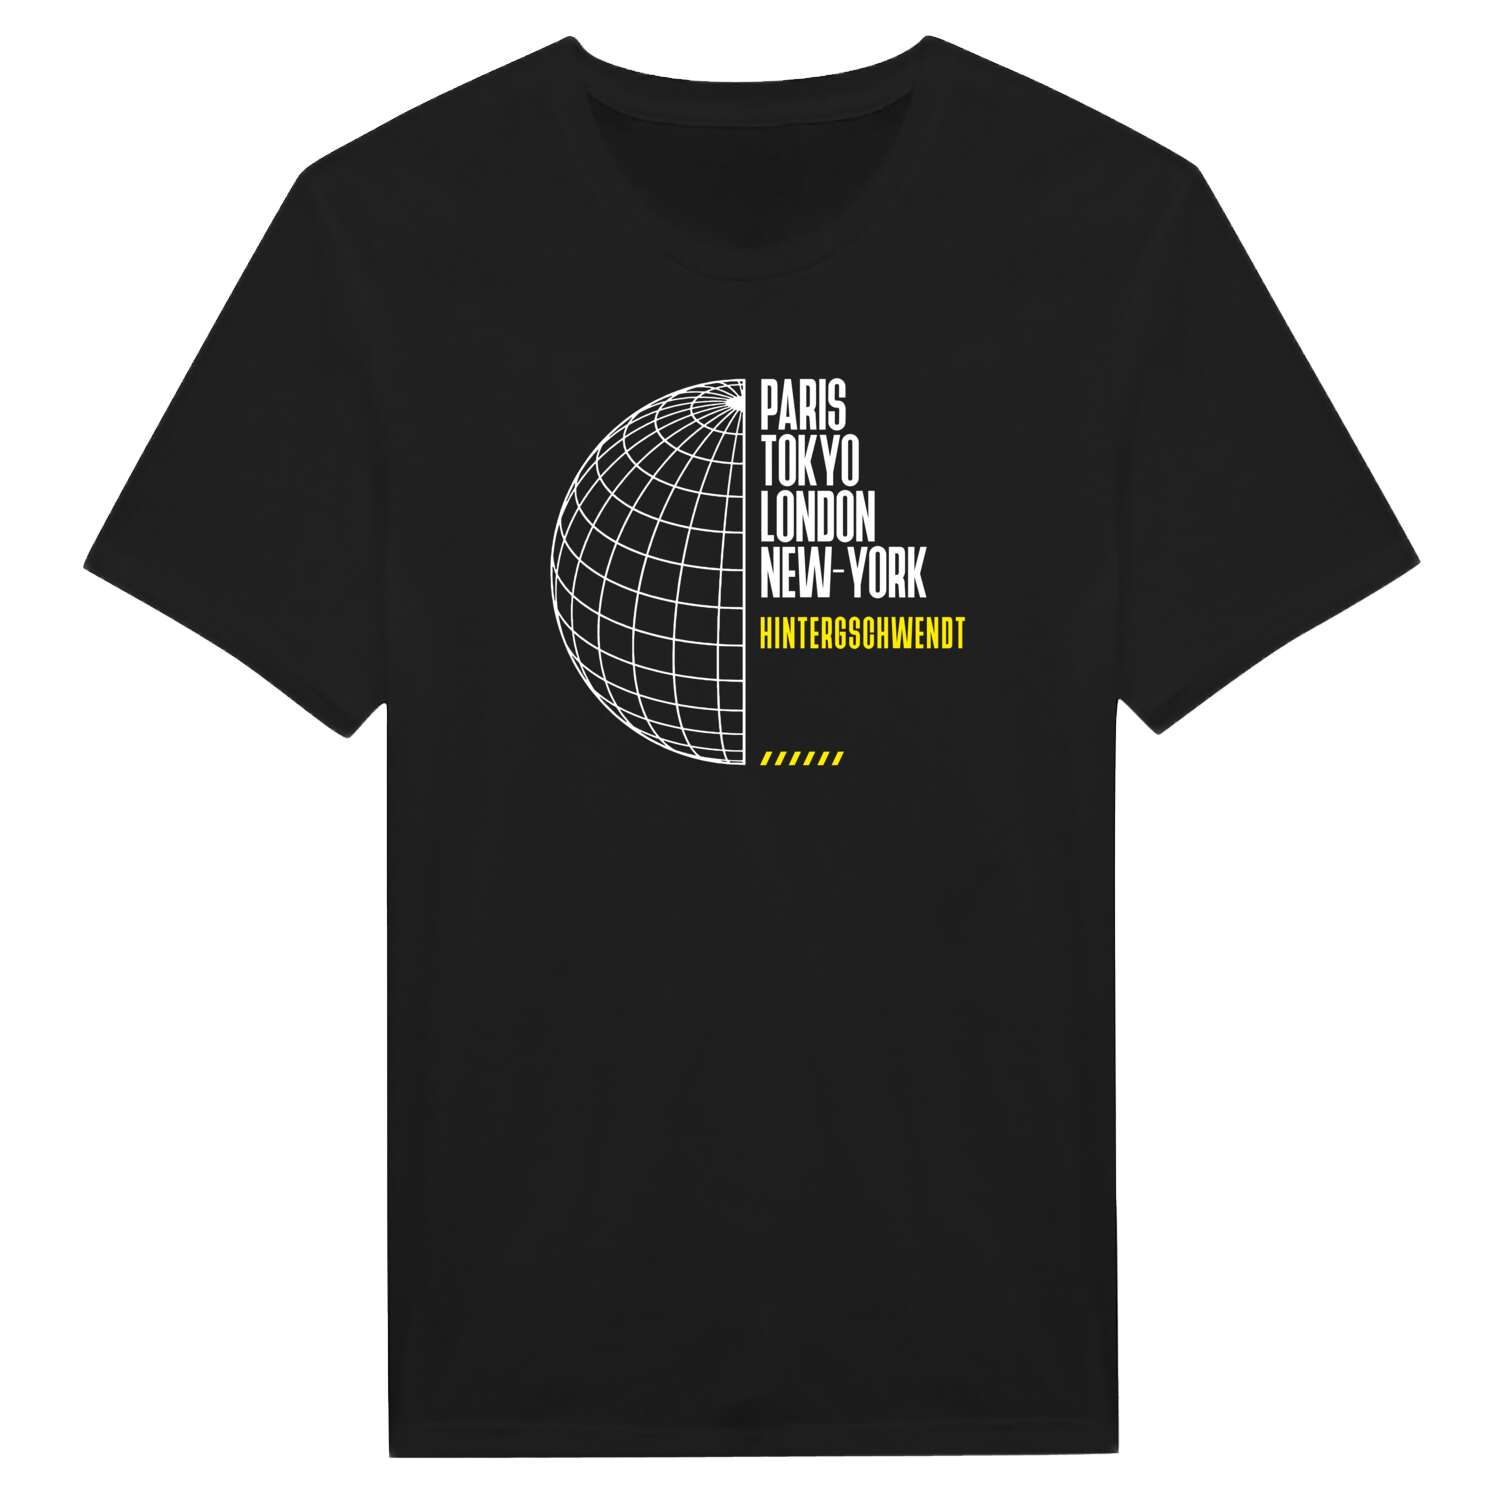 Hintergschwendt T-Shirt »Paris Tokyo London«